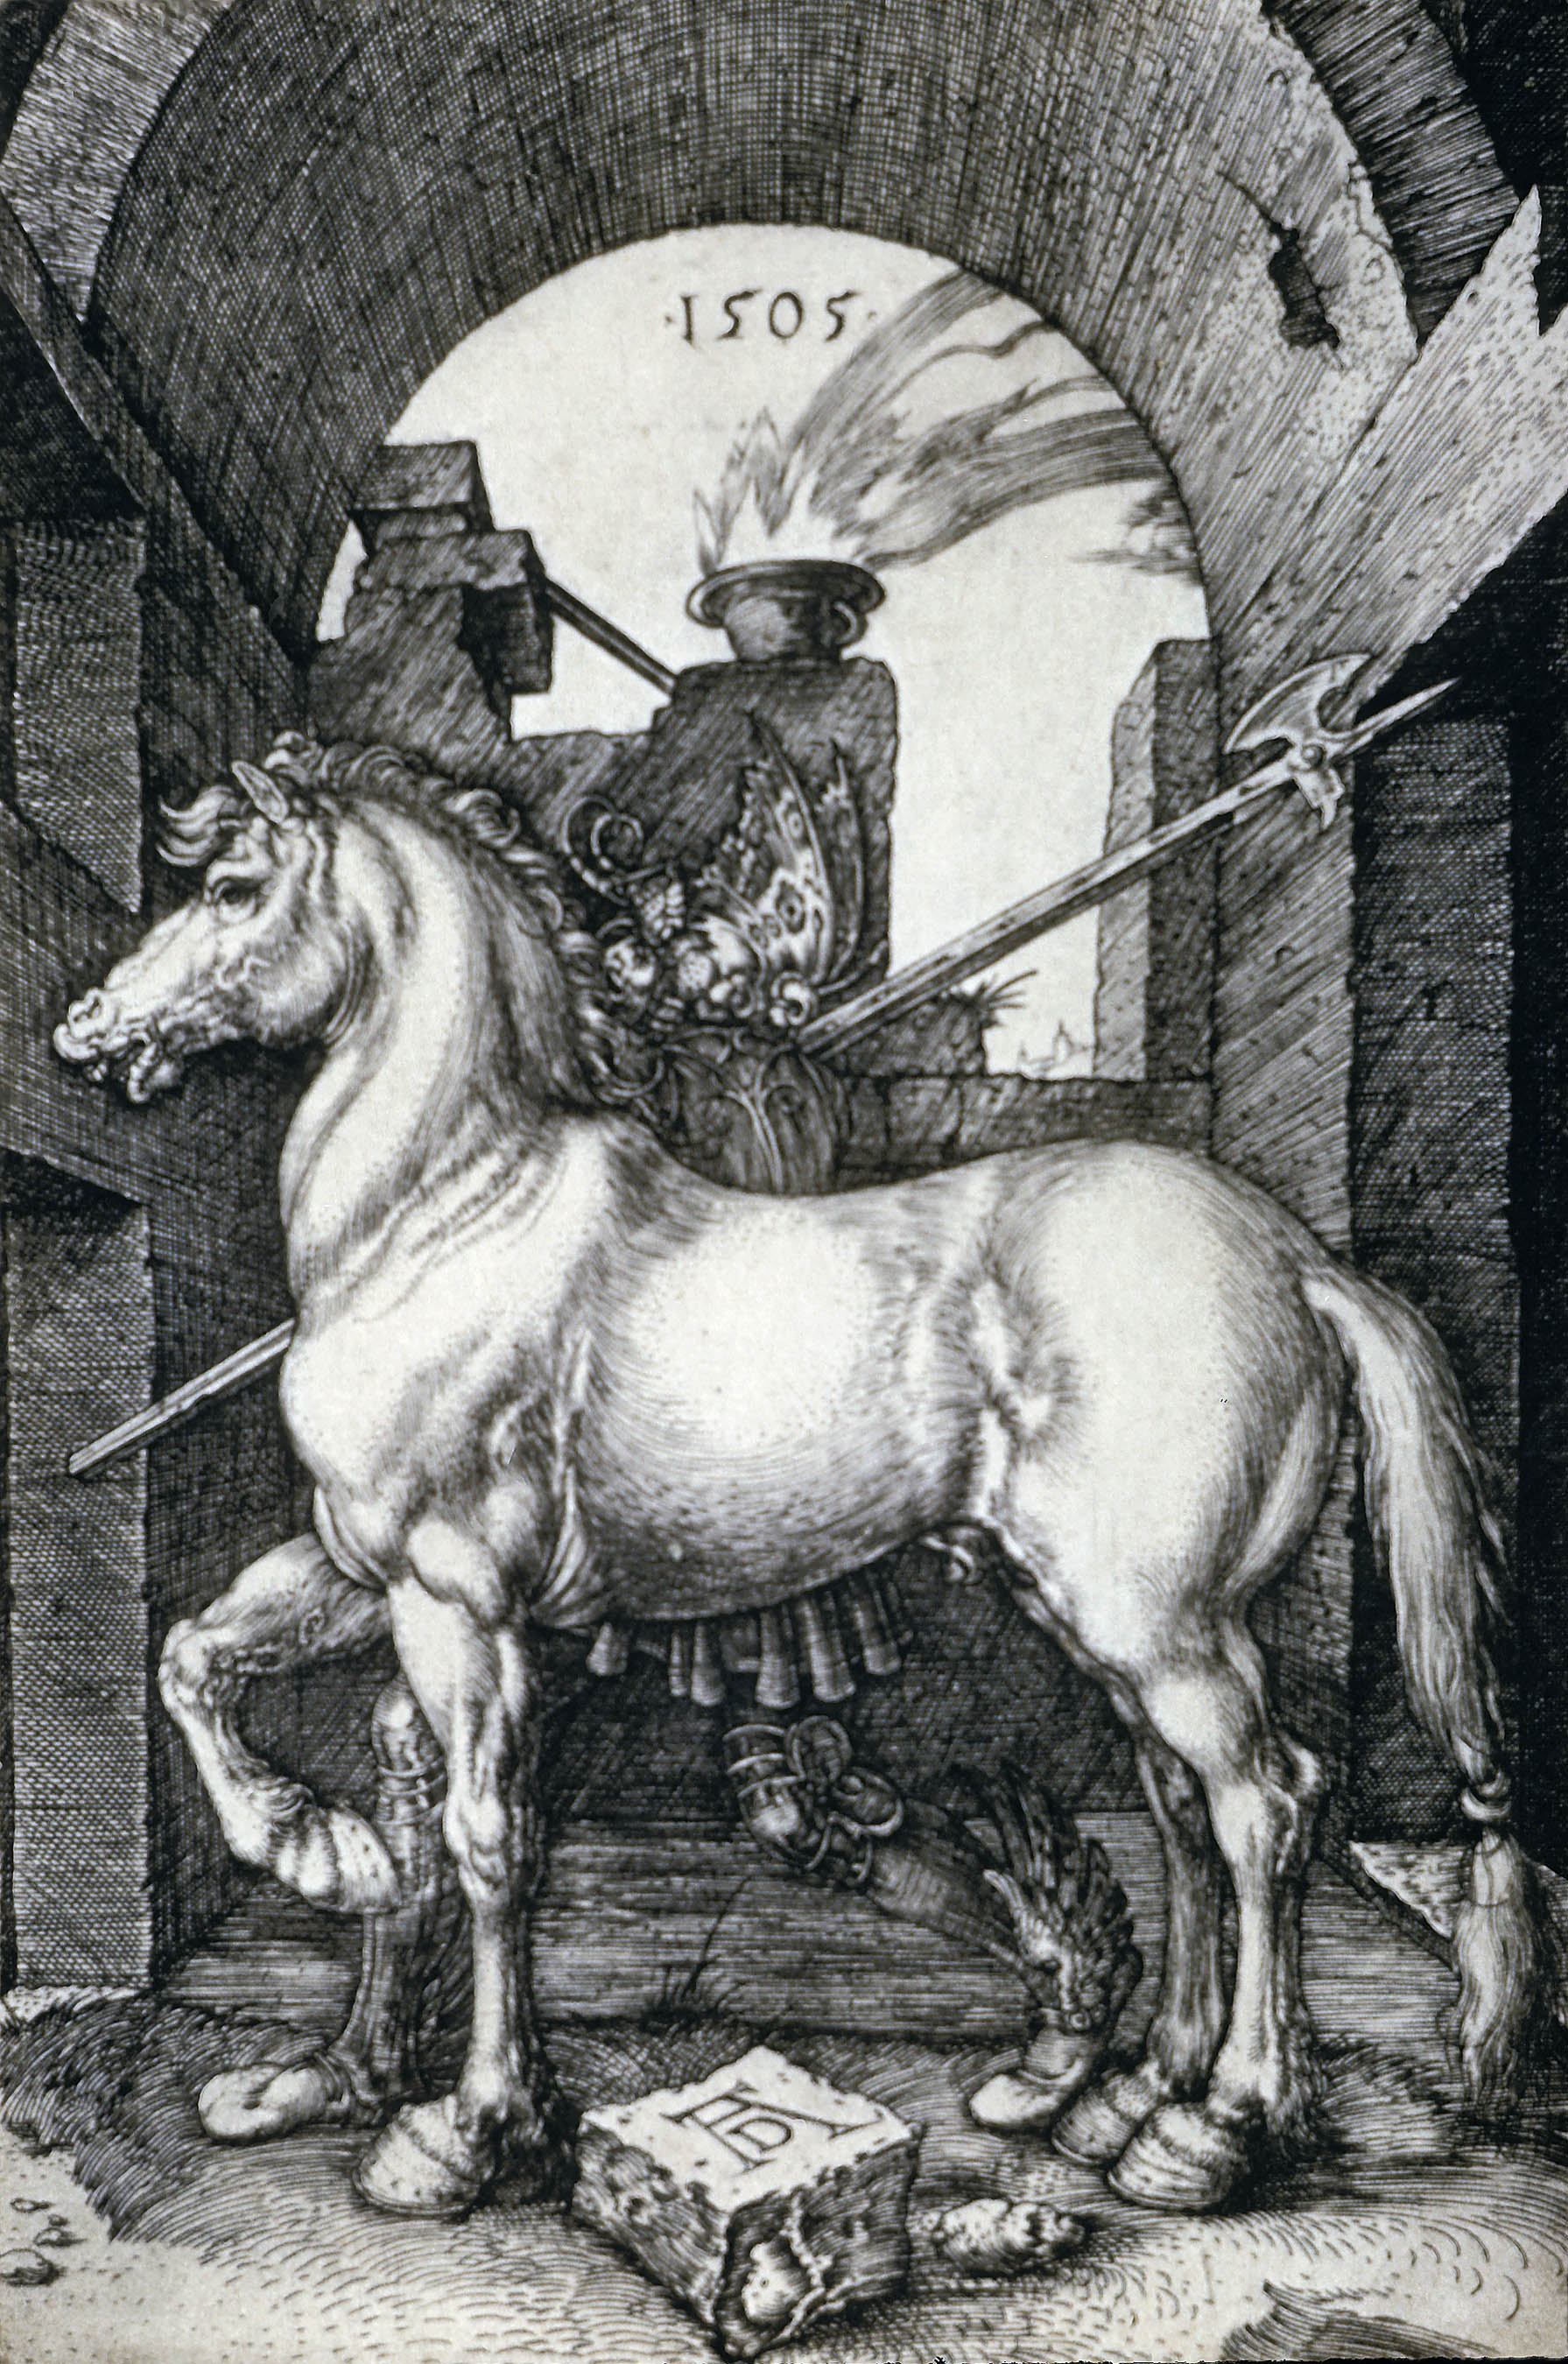 Small Horse by Albrecht Dürer - 1505 - - Victoria and Albert Museum